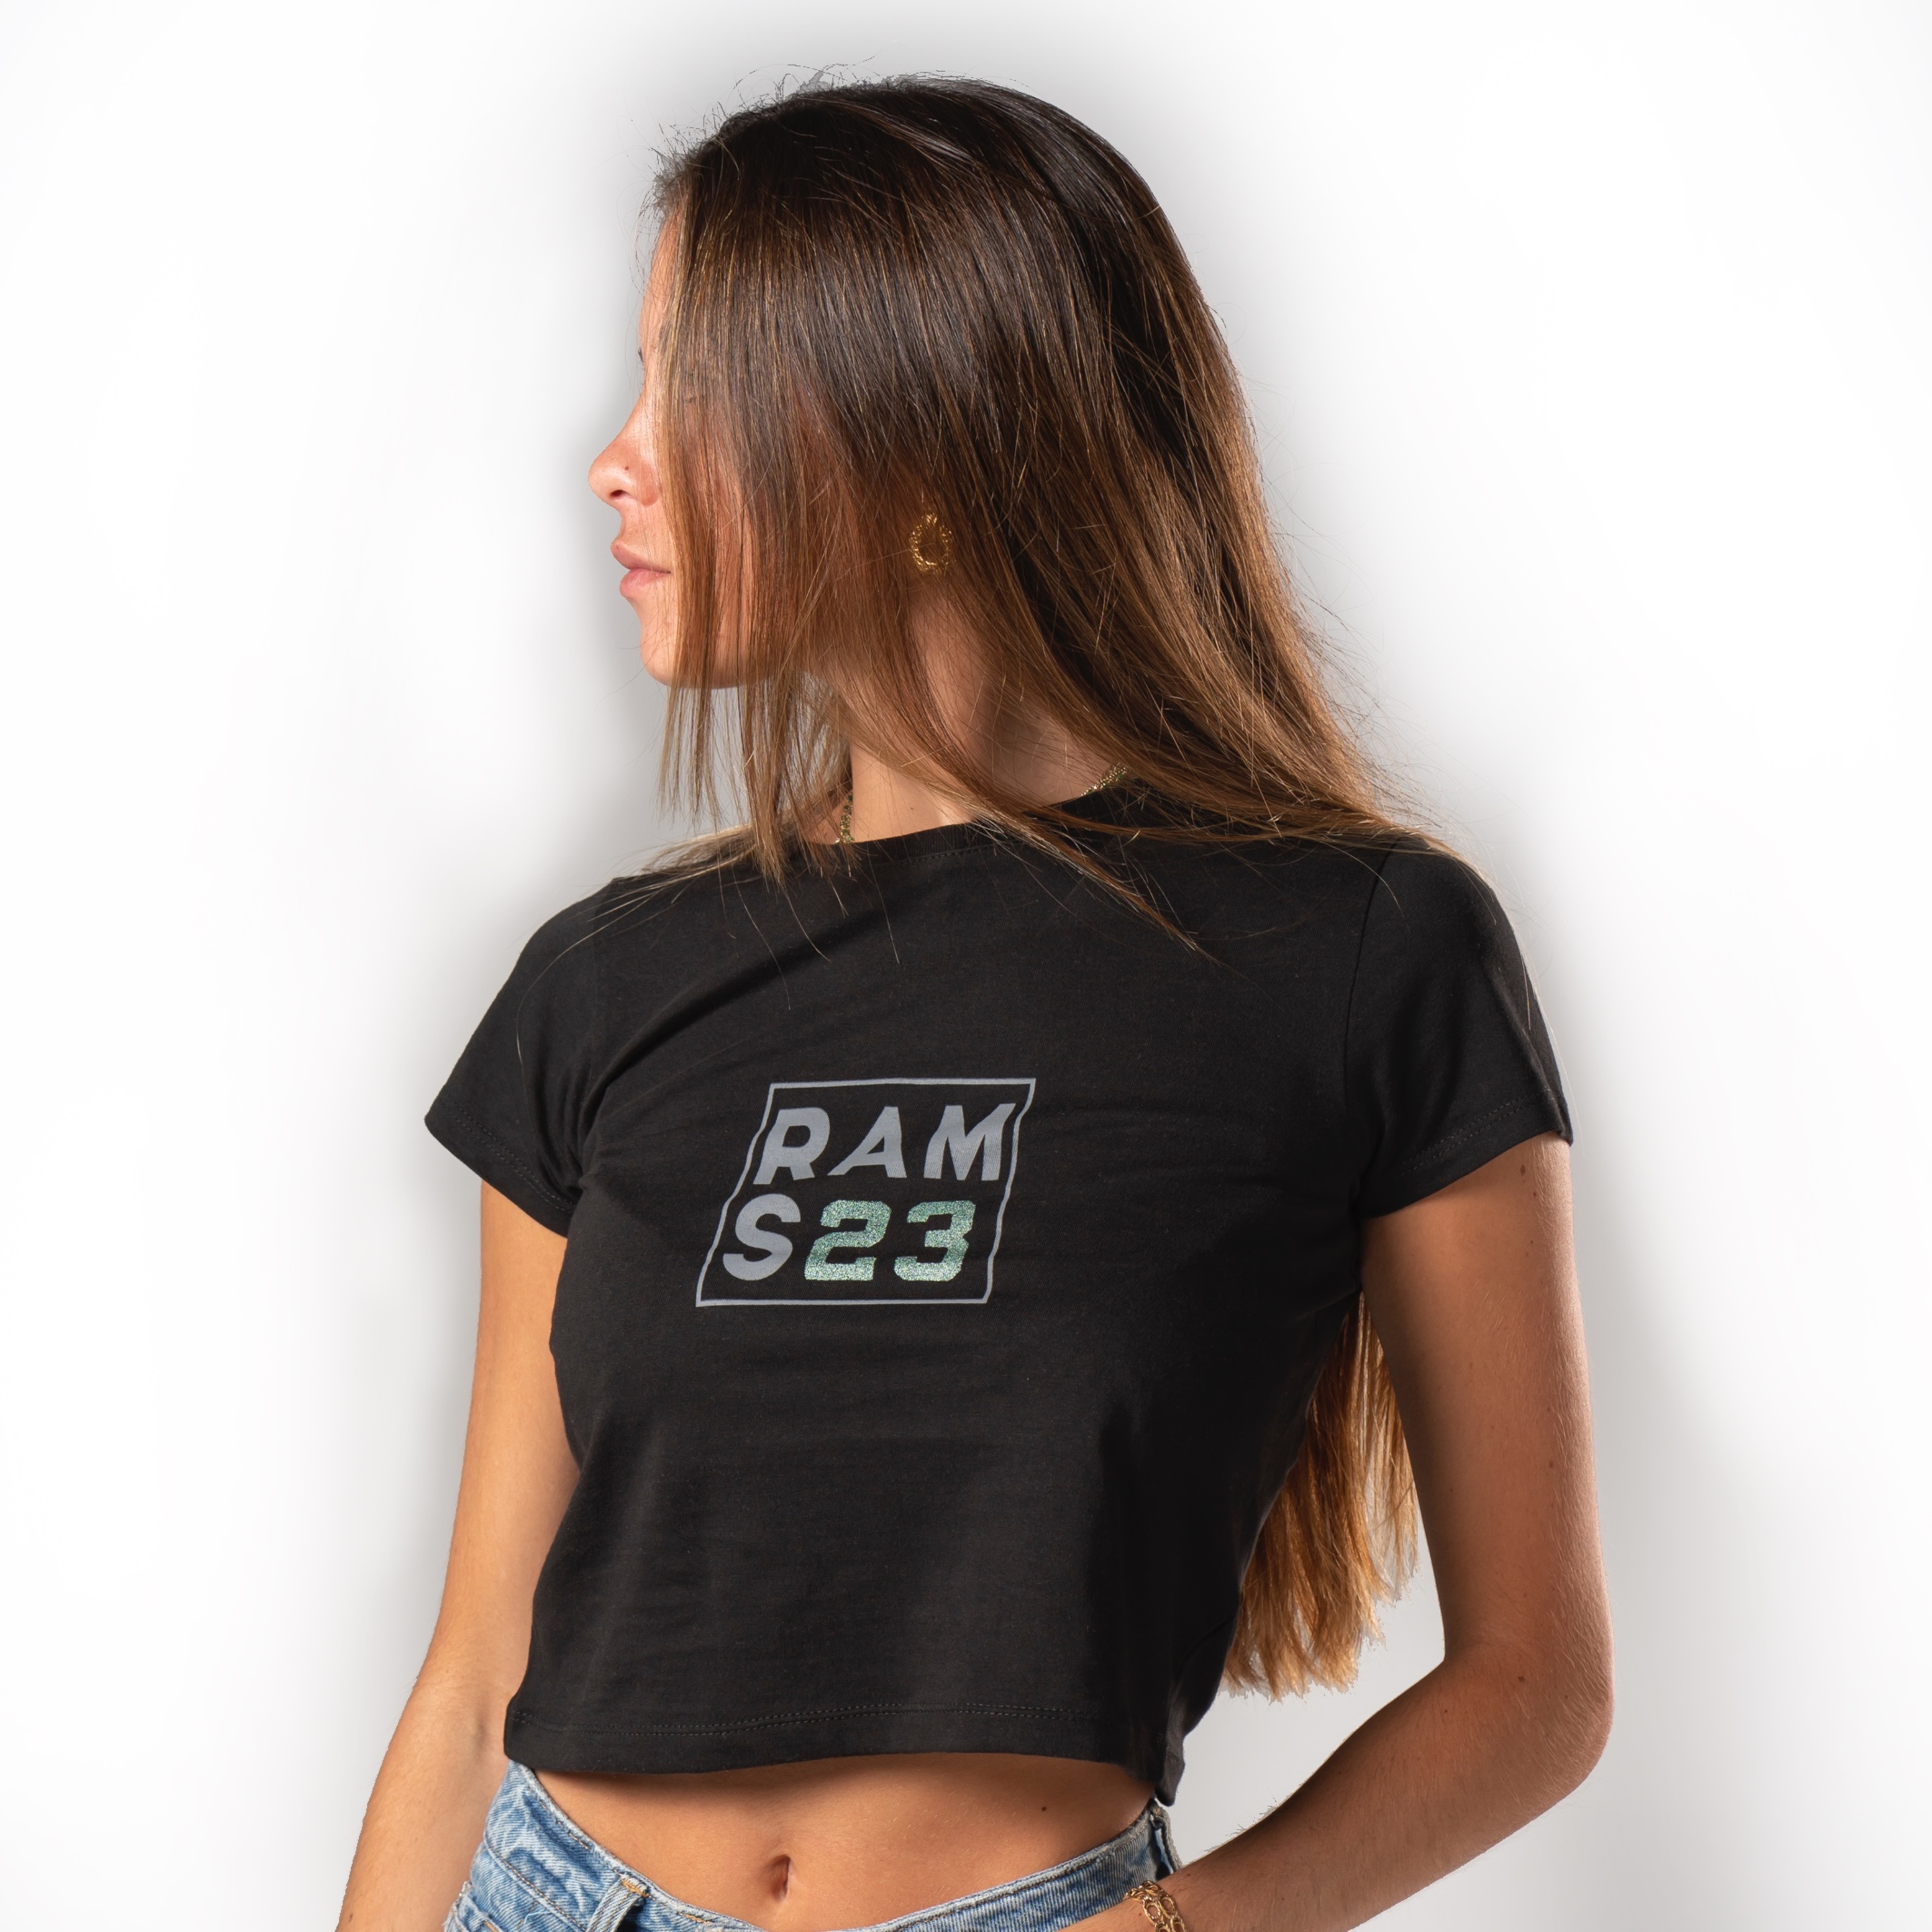 Camiseta Rams 23 Square - negro - 